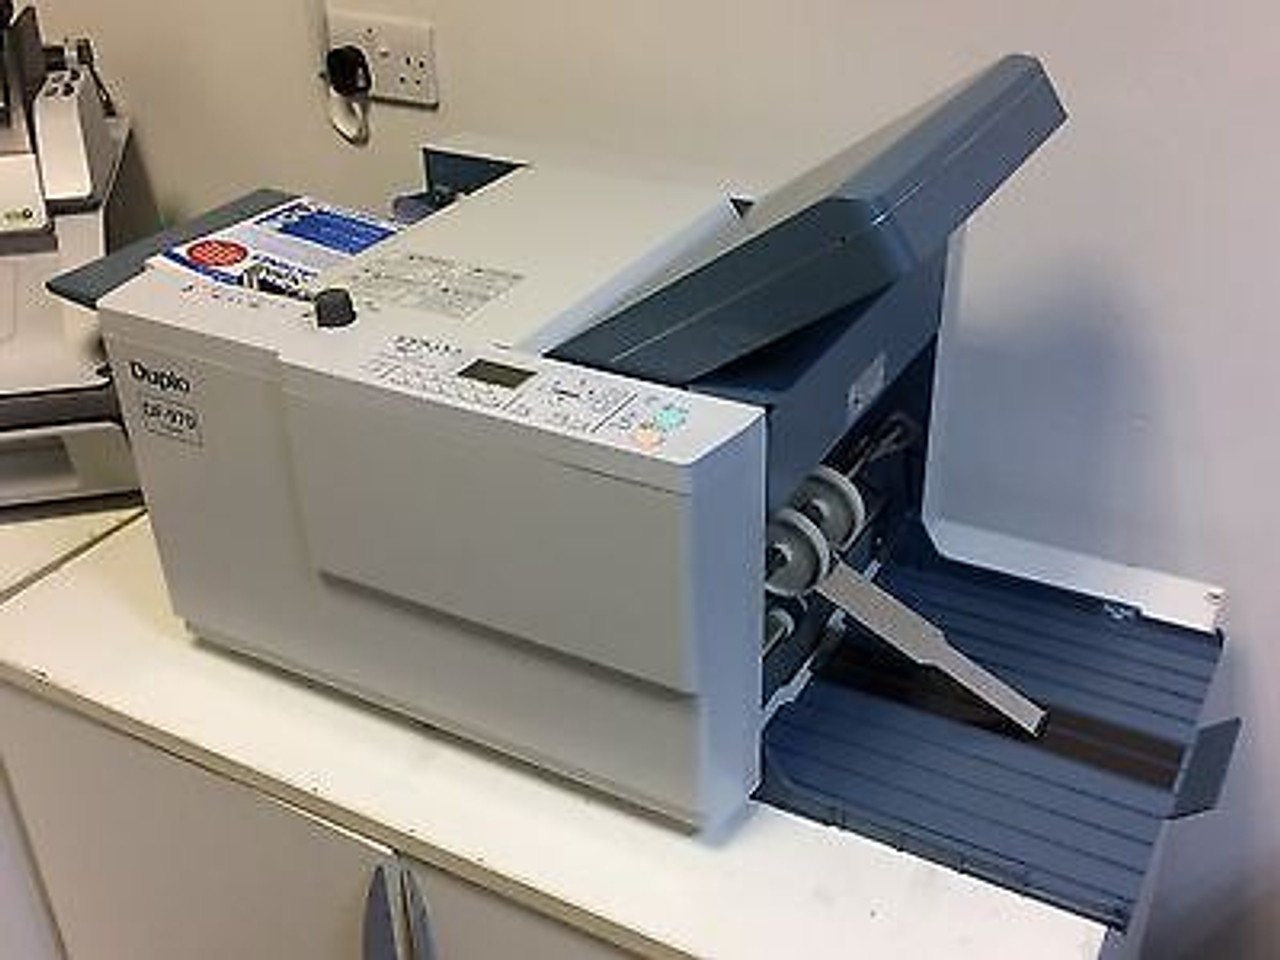 Duplo DF-970 - A3 A4 A5 Automatic Paper Folding Machine